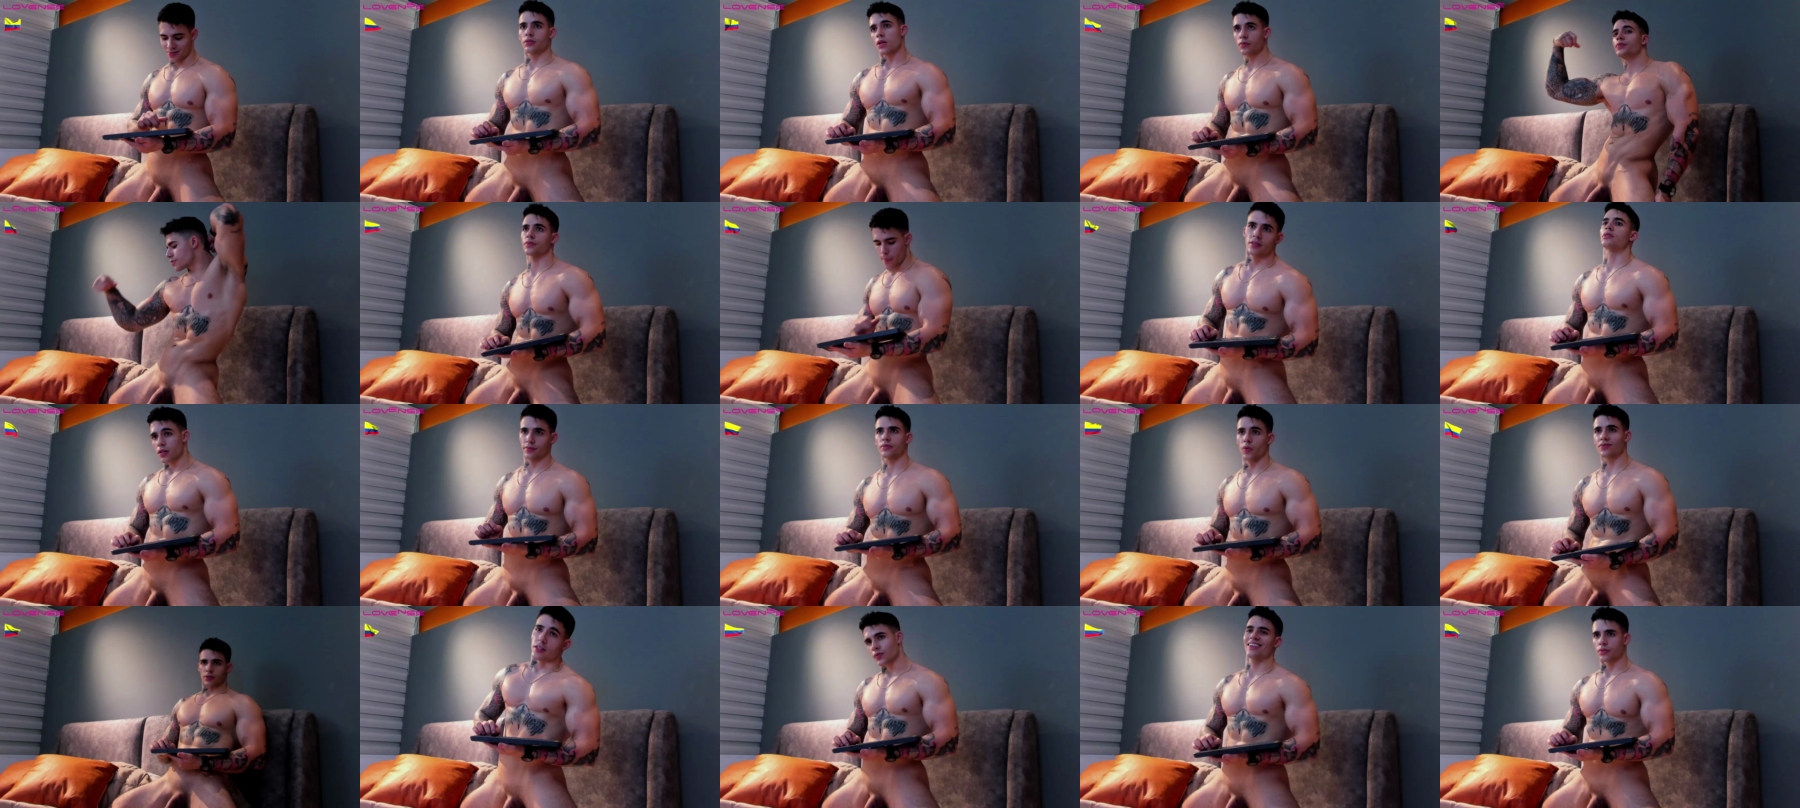 Dominic_Sullivan1  28-10-2021 Male Webcam